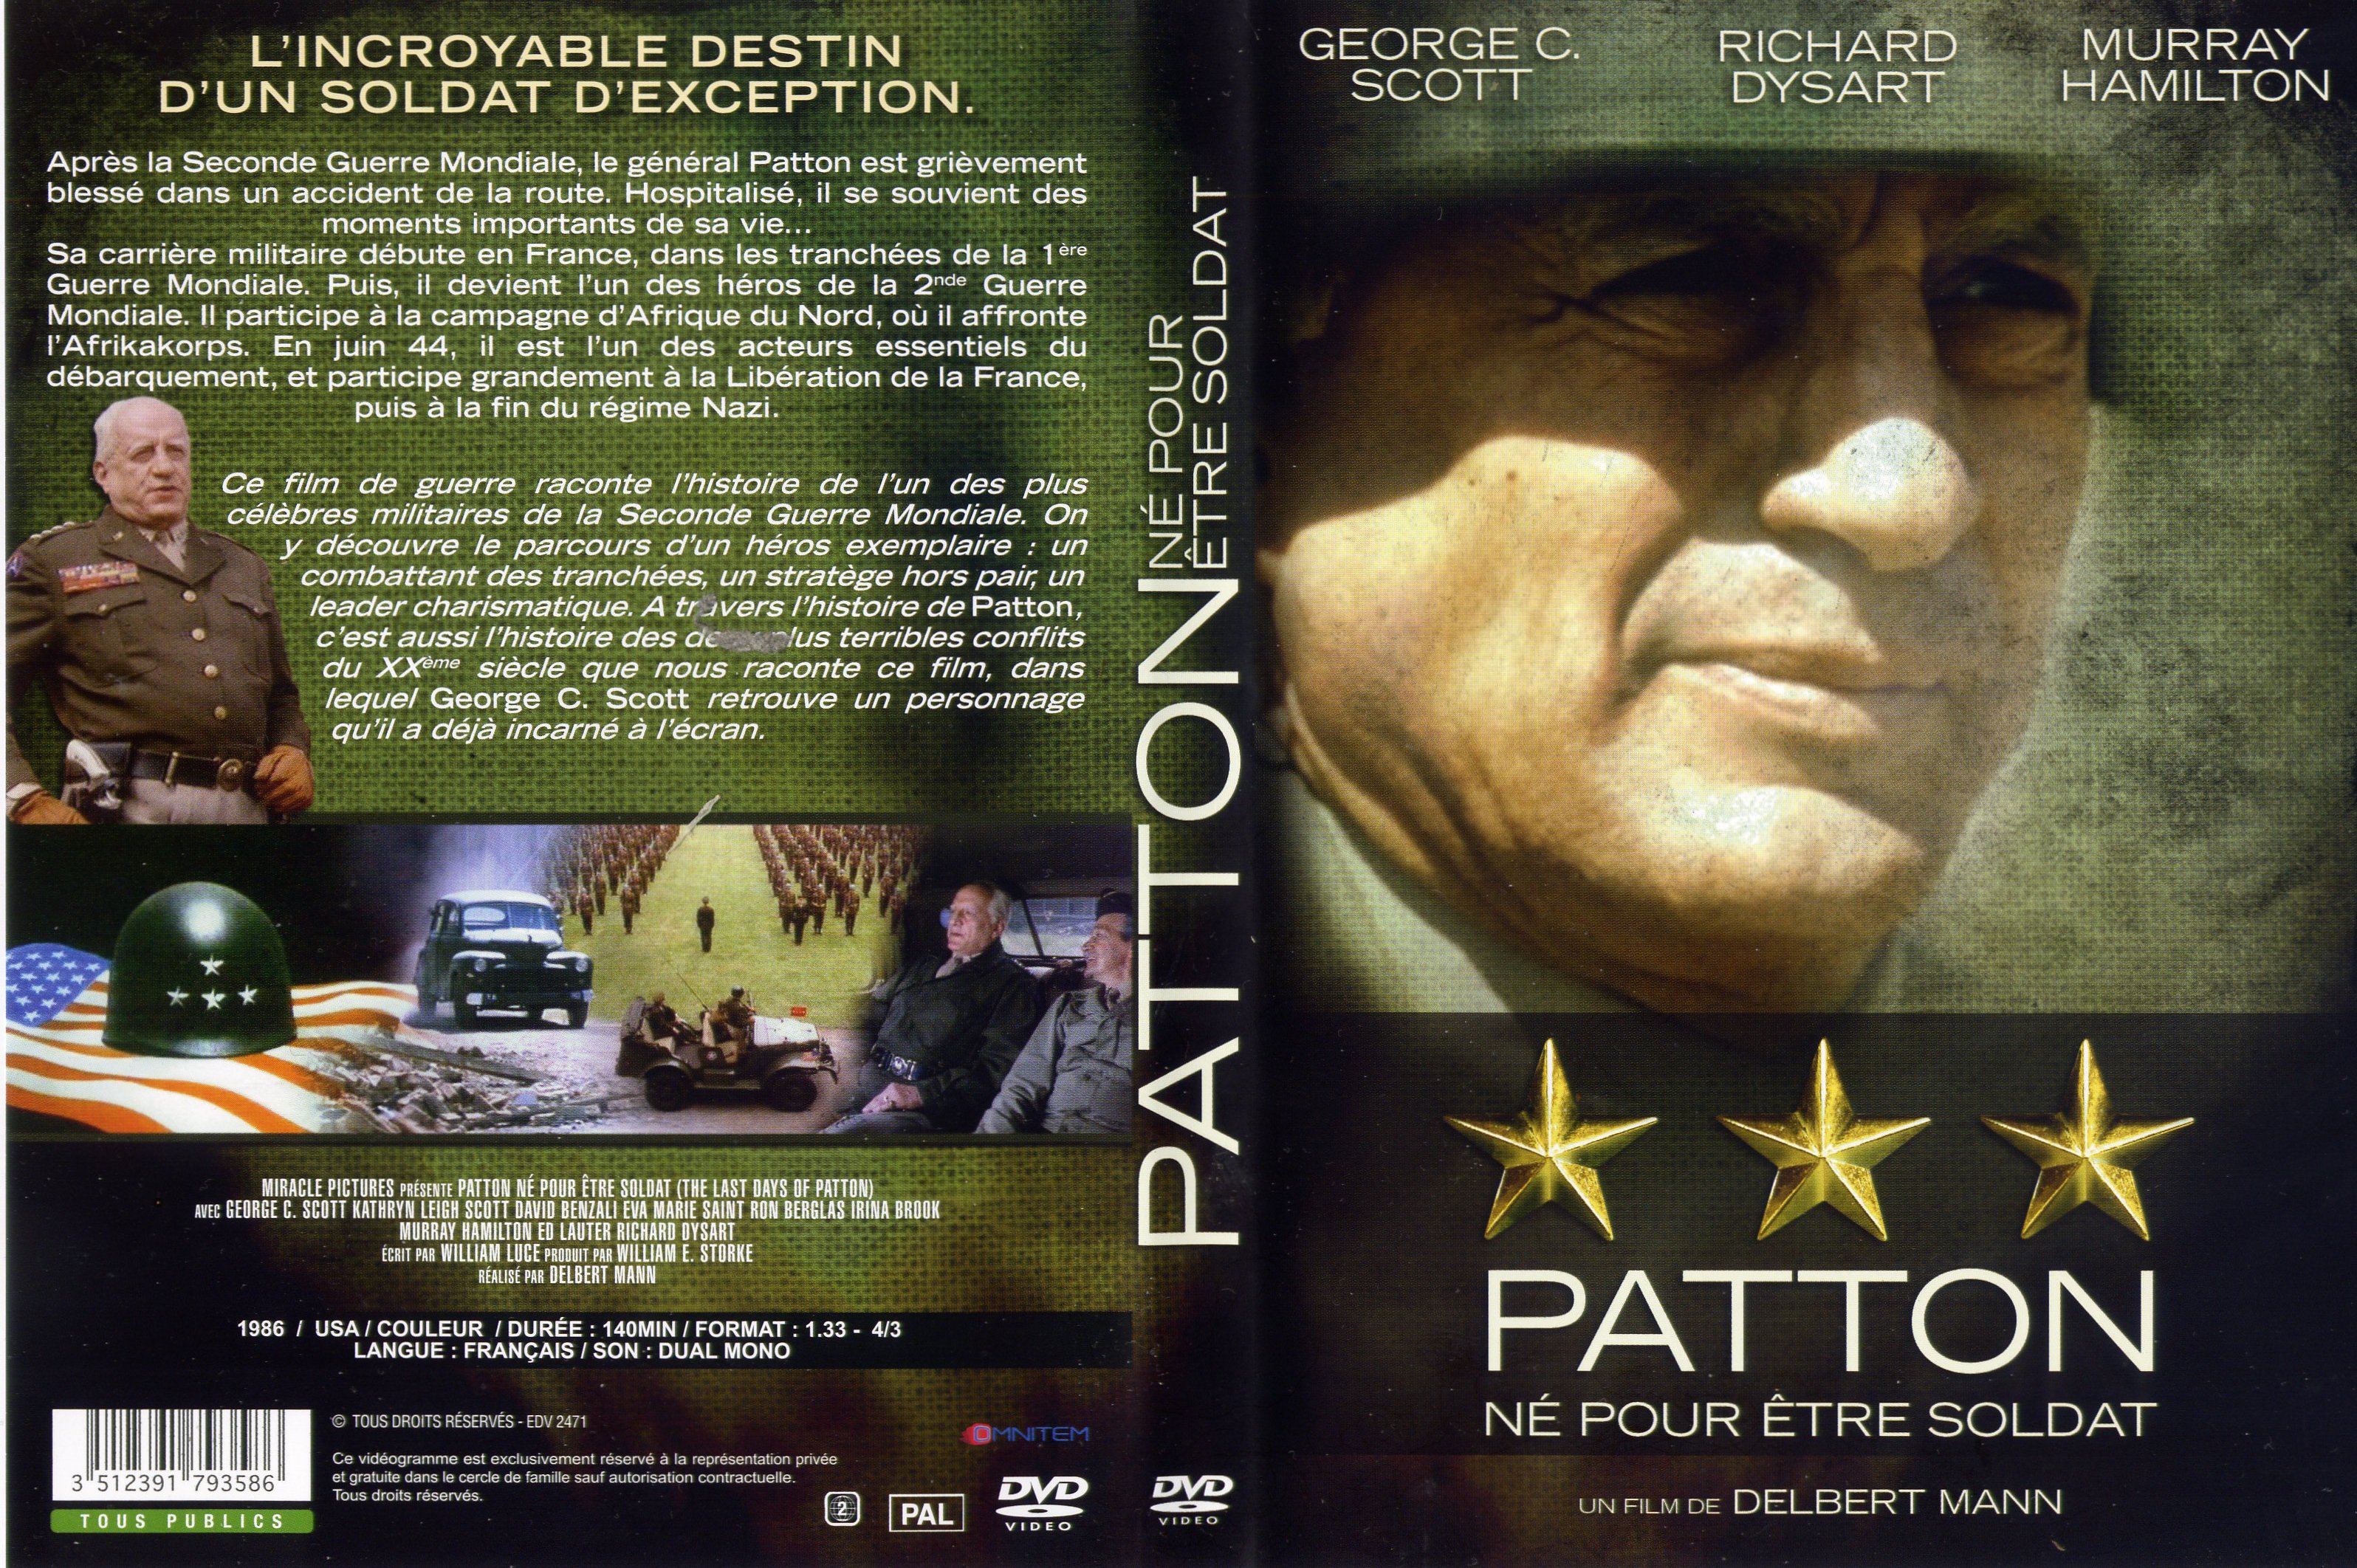 Jaquette DVD Patton n pour tre soldat